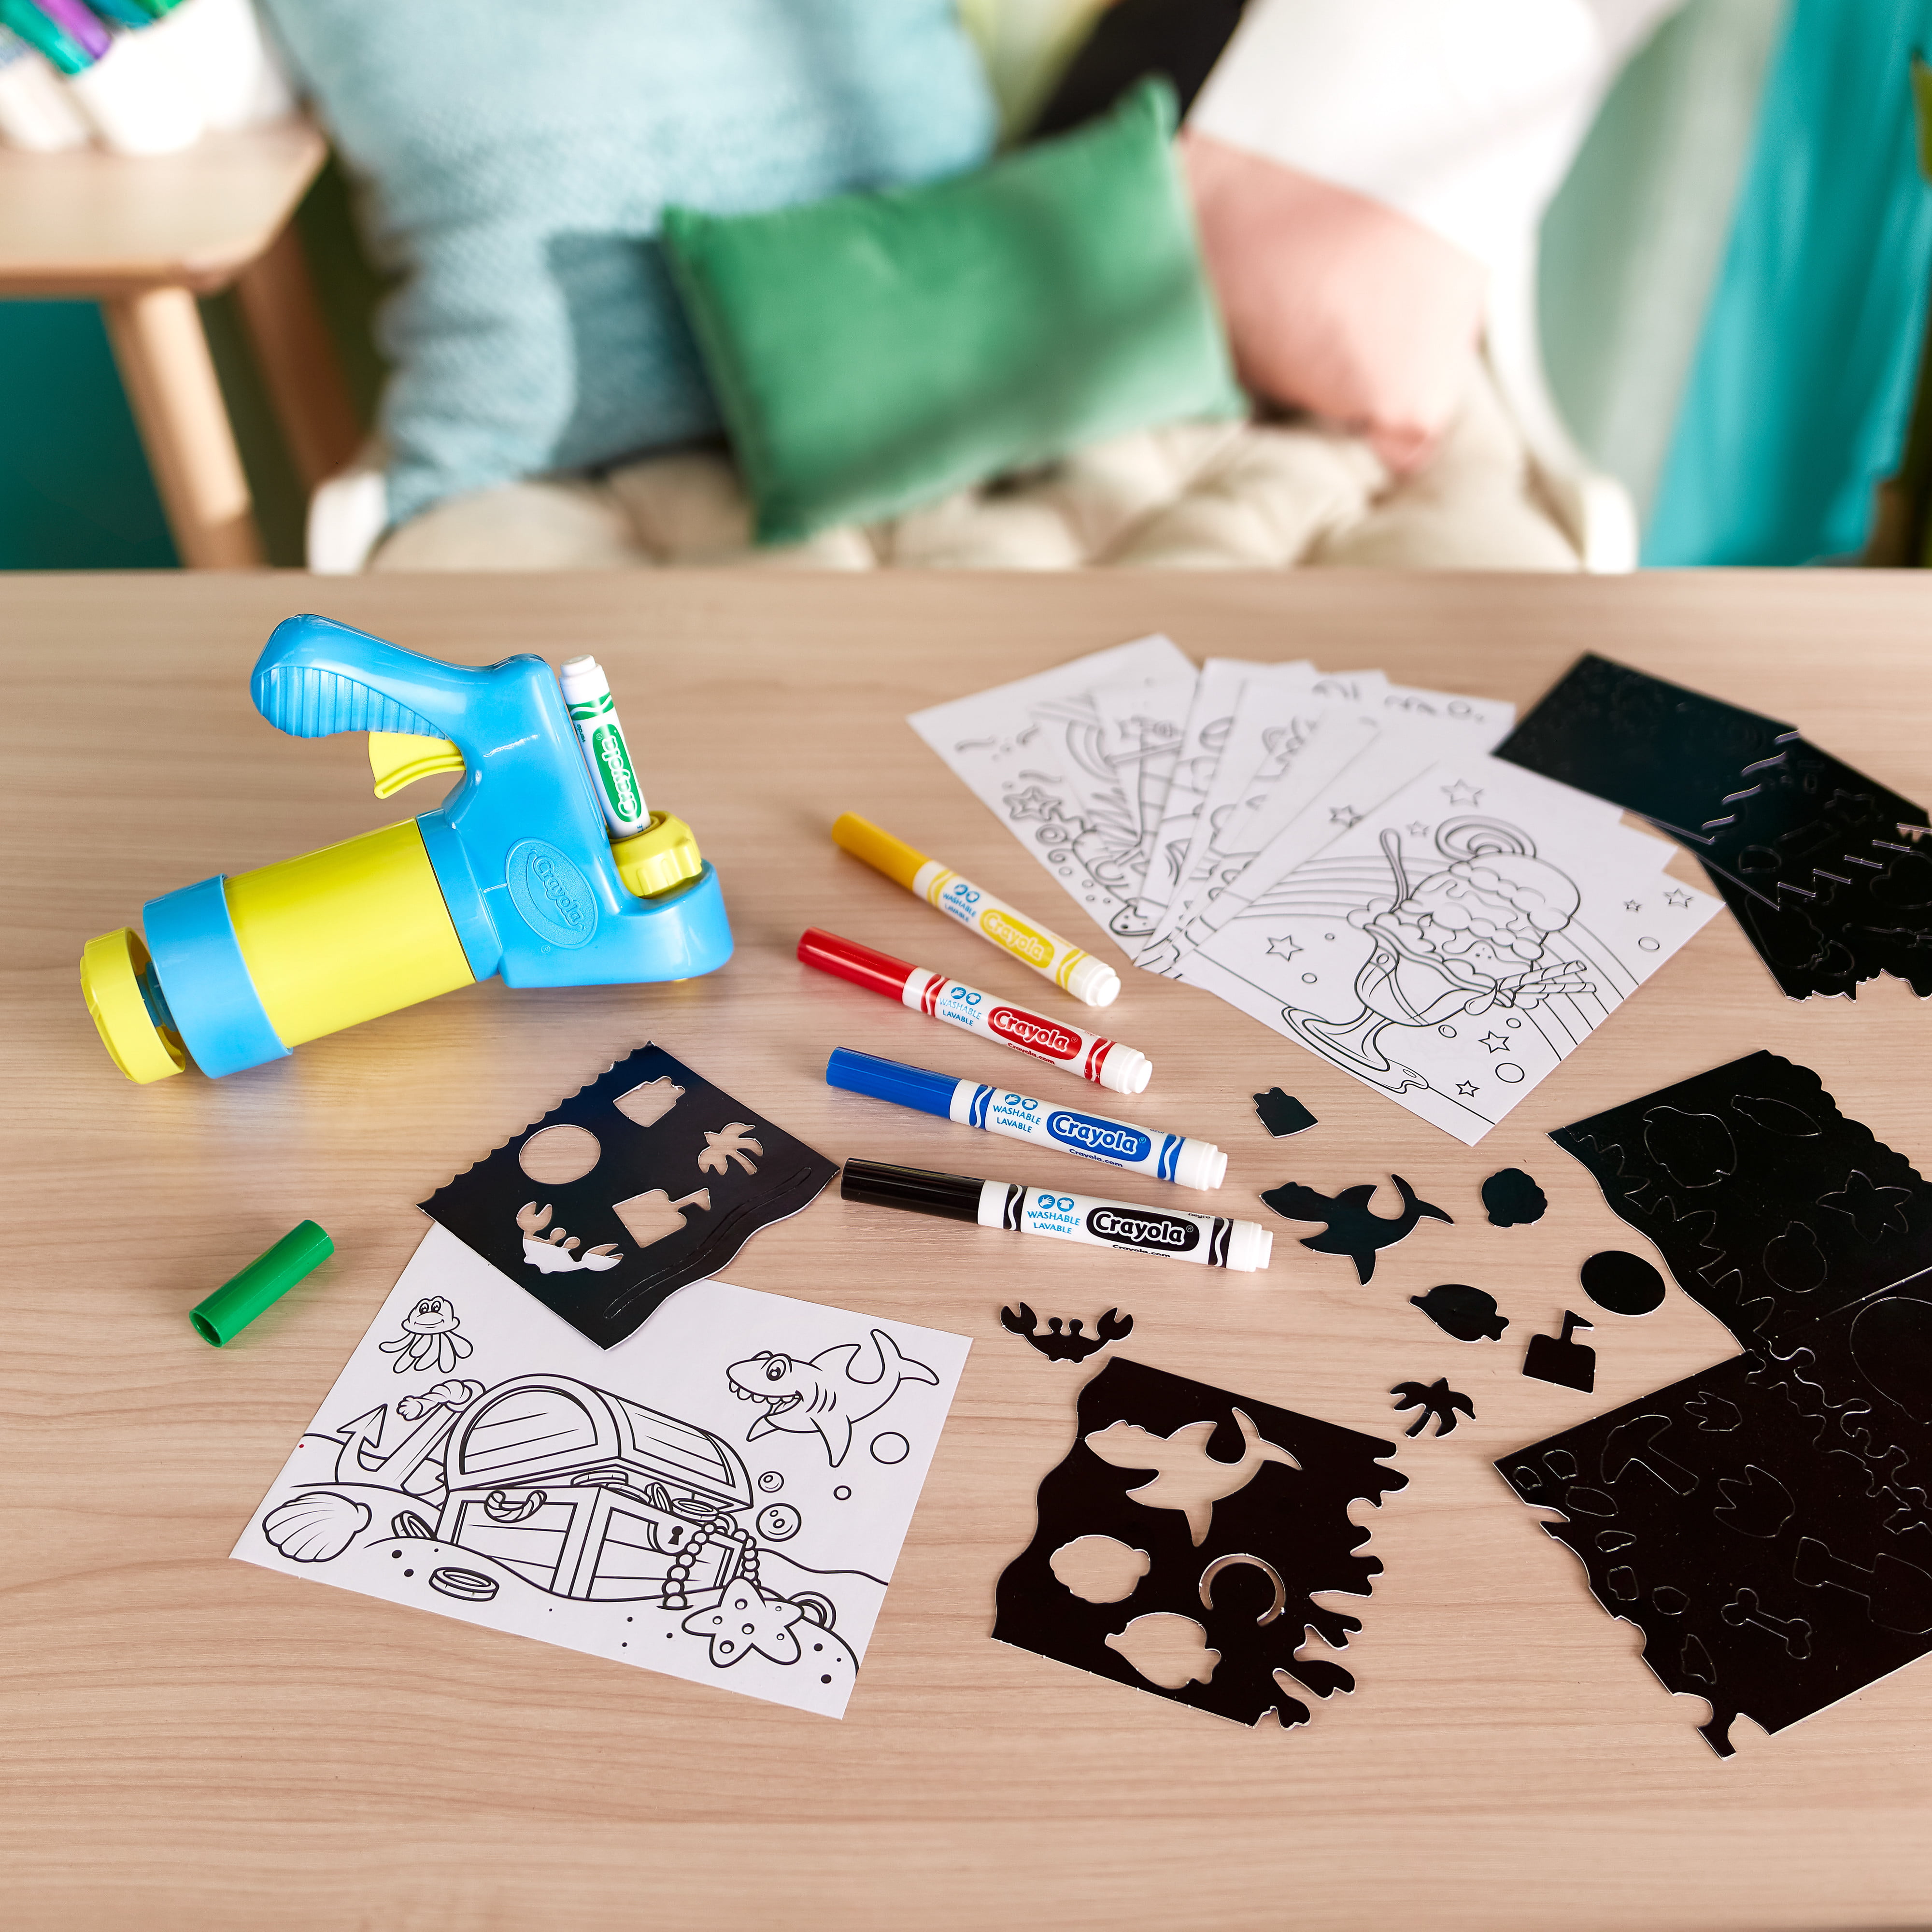  Crayola Mini Marker Sprayer, Marker Airbrush Kit, Gift for Kids,  7, 8, 9, 10 : Toys & Games